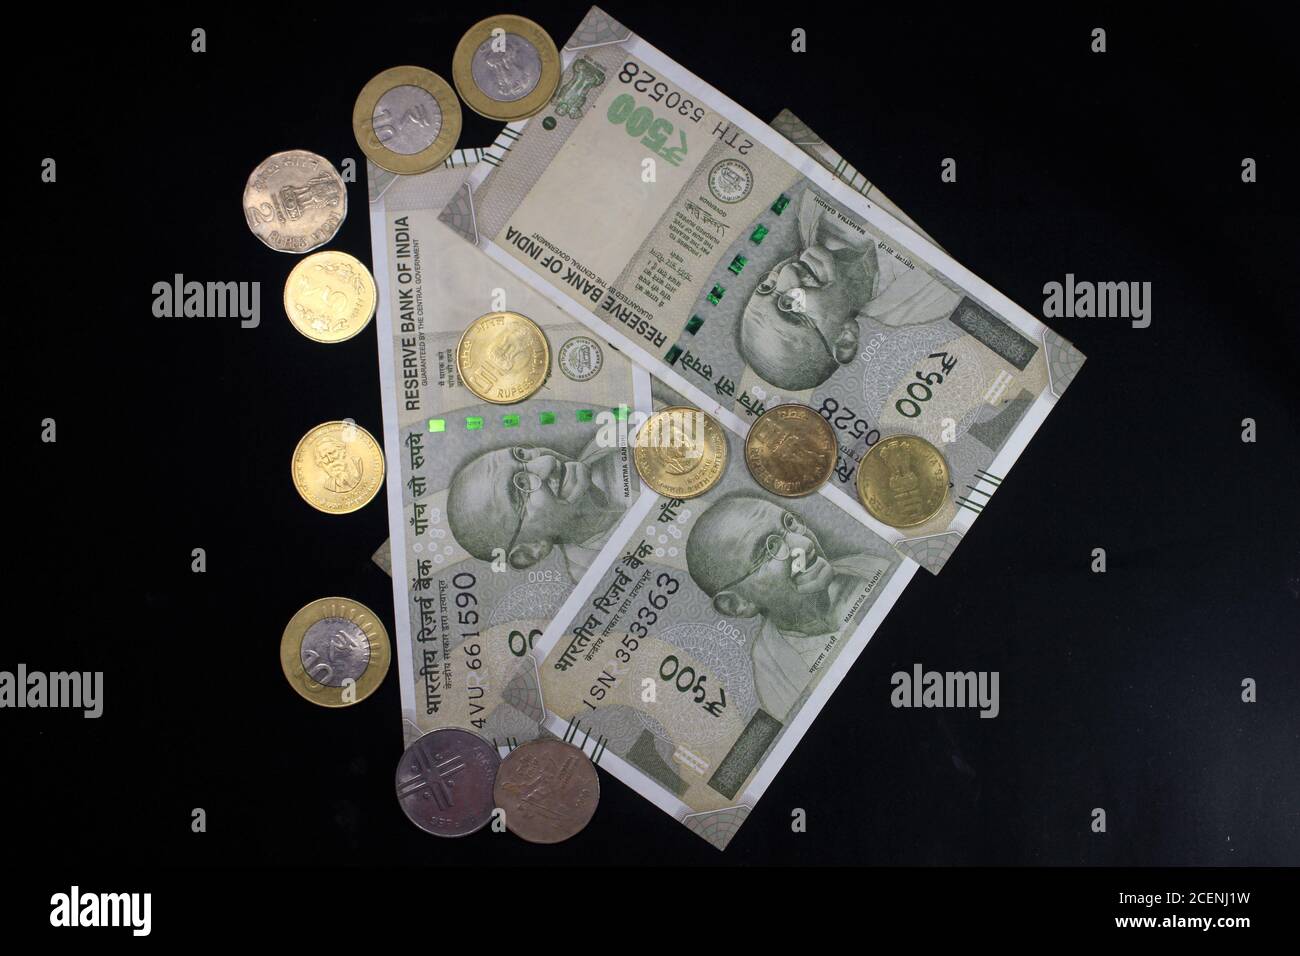 Monnaie indienne. Note de 500 roupies avec pièces de monnaie indiennes. Monnaie indienne isolée sur fond noir. Banque D'Images